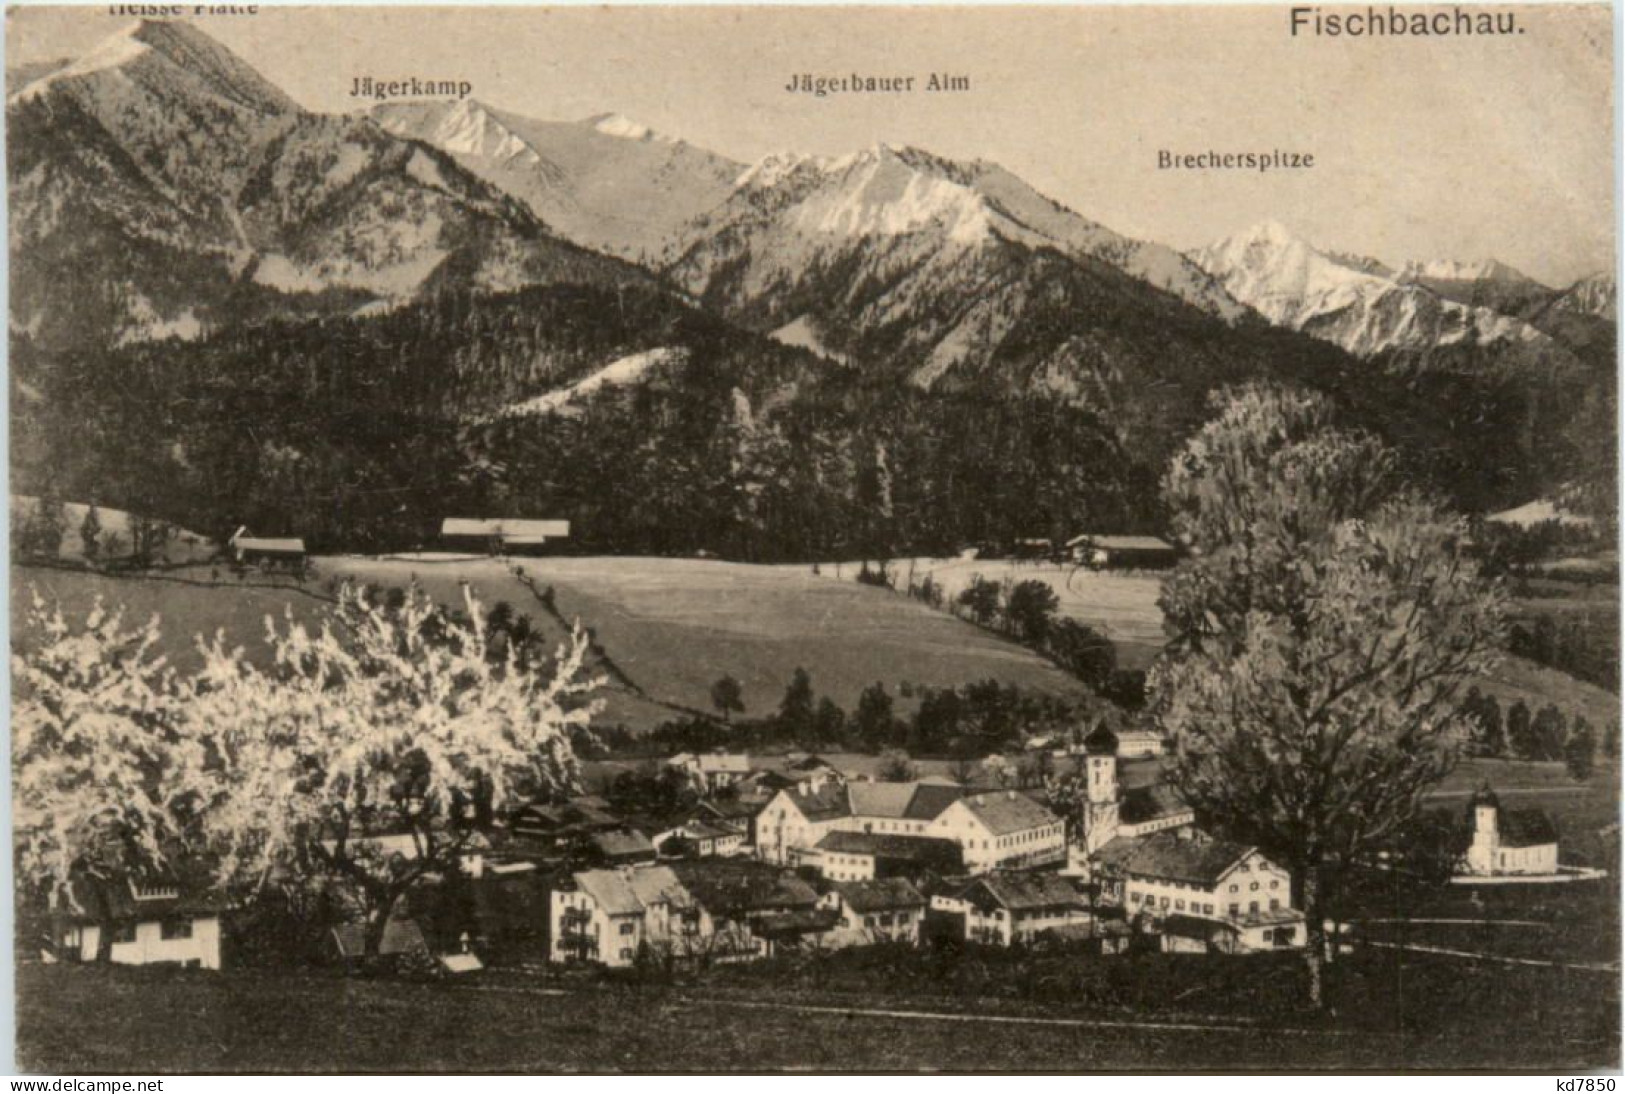 Fischbachau - Miesbach